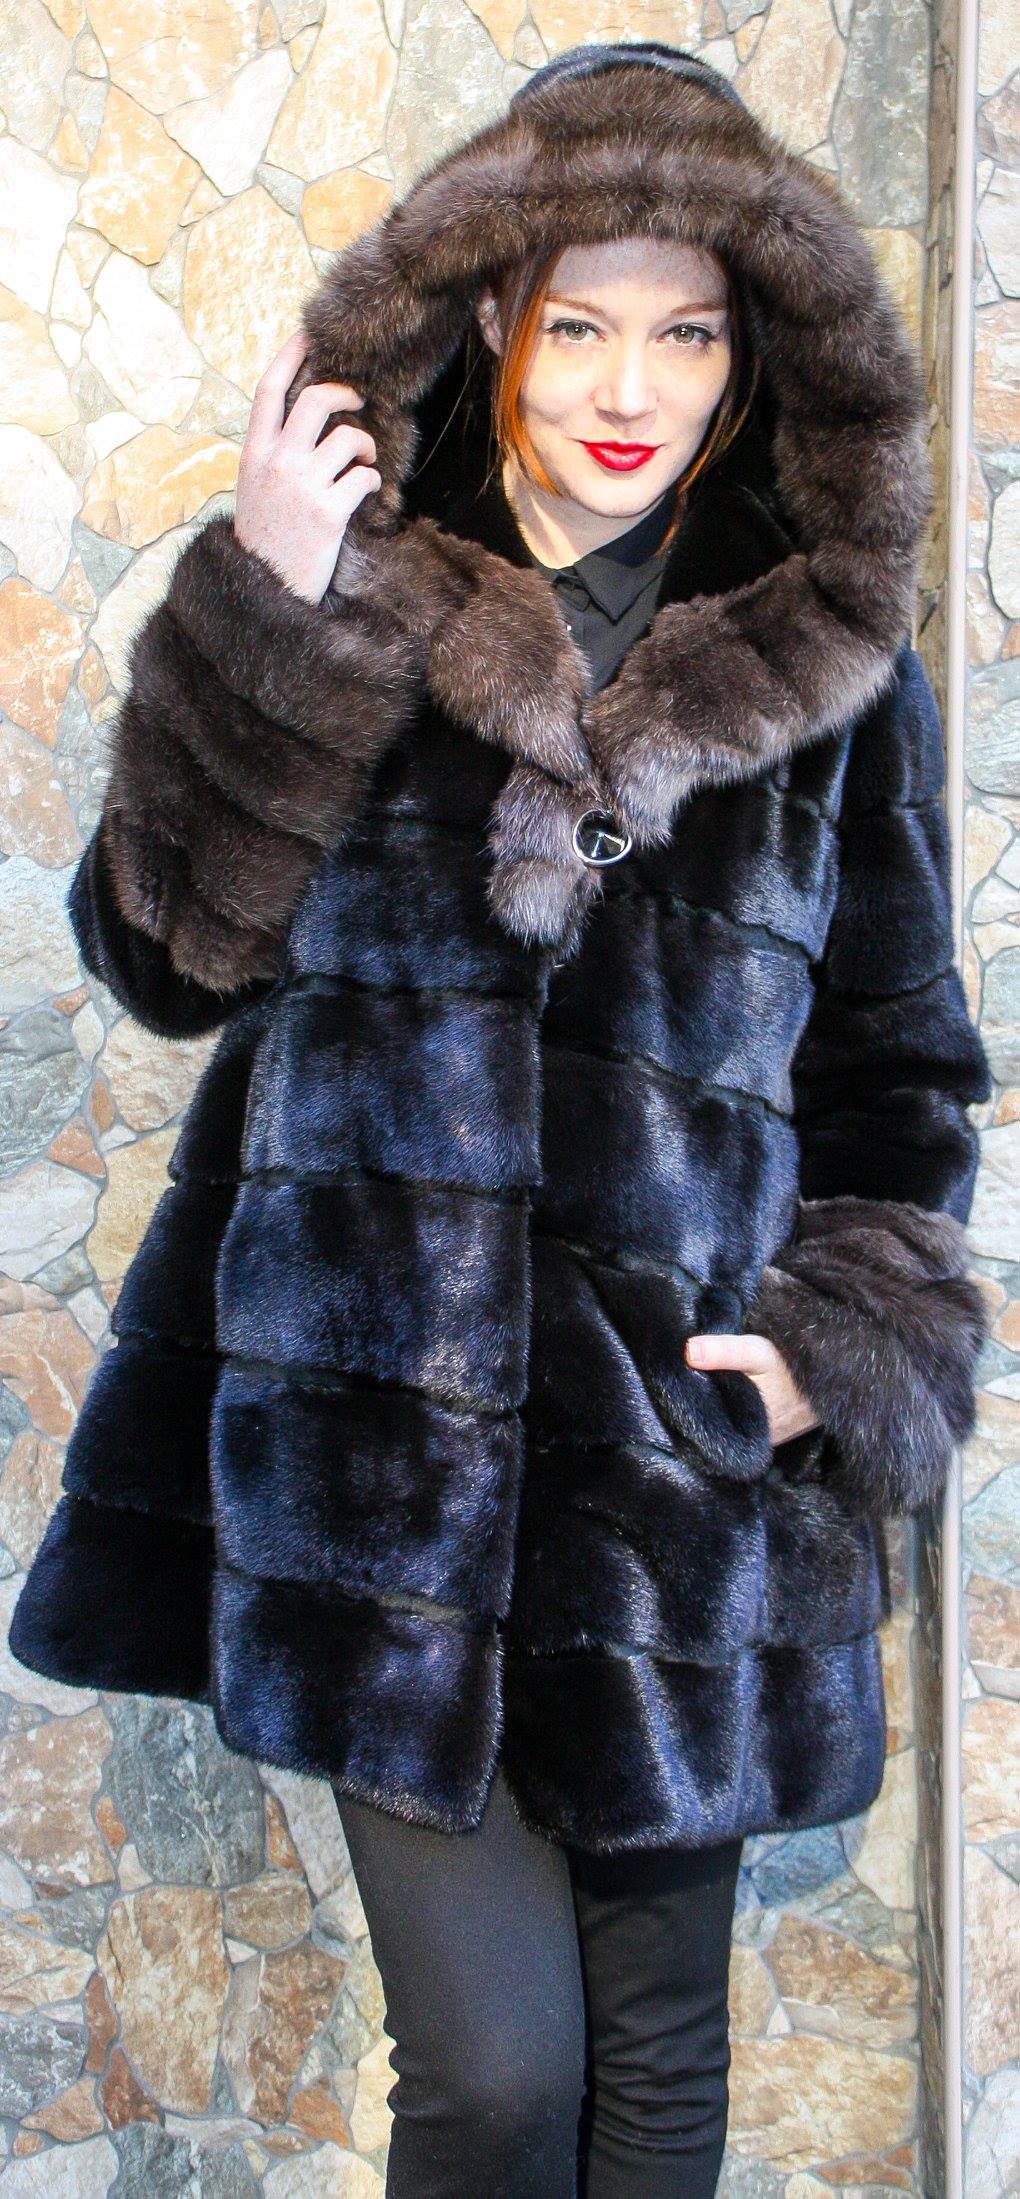 Russian Fur Coats - Coat Nj